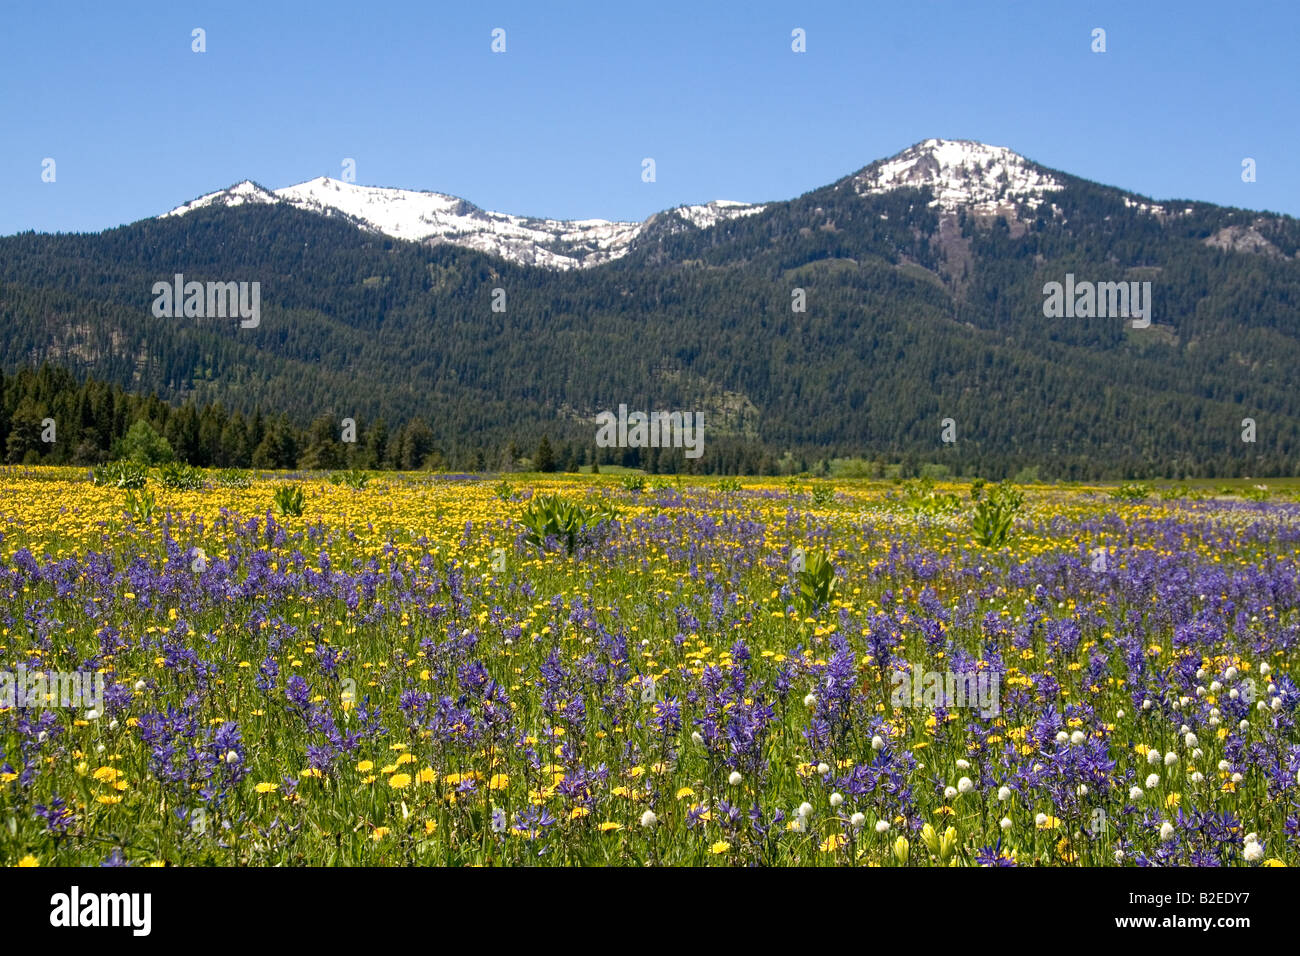 Camas prairie de fleurs sauvages Lily Banc ci-dessous dans la vallée ronde Idaho Mountian Banque D'Images